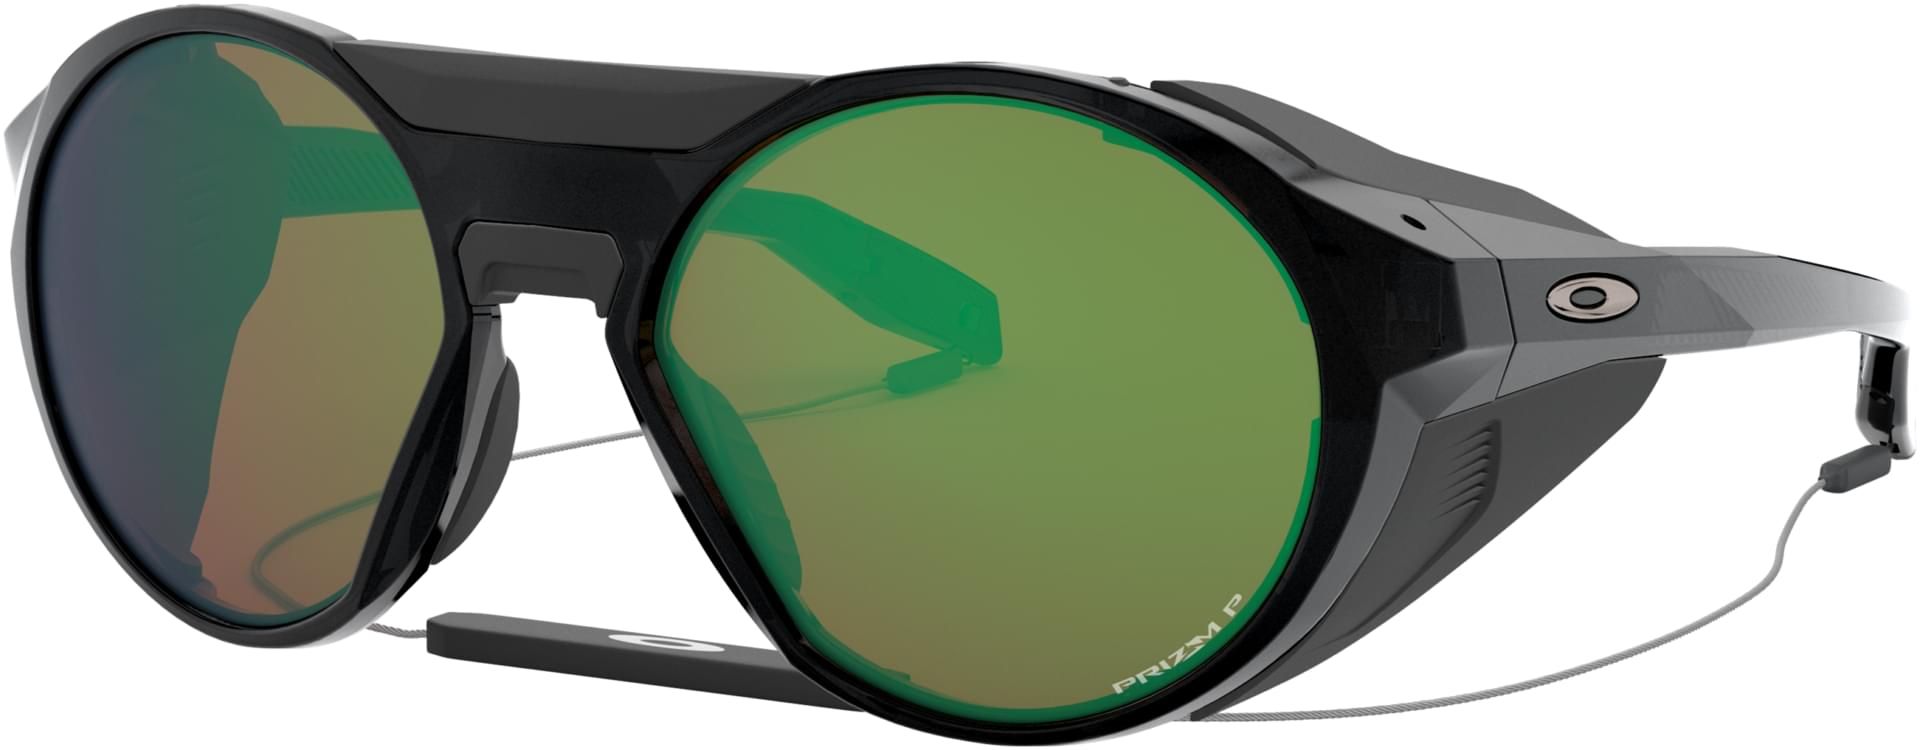 Oakley Holbrook Metal OO4123 07 Prizm Polarised Sunglasses - US